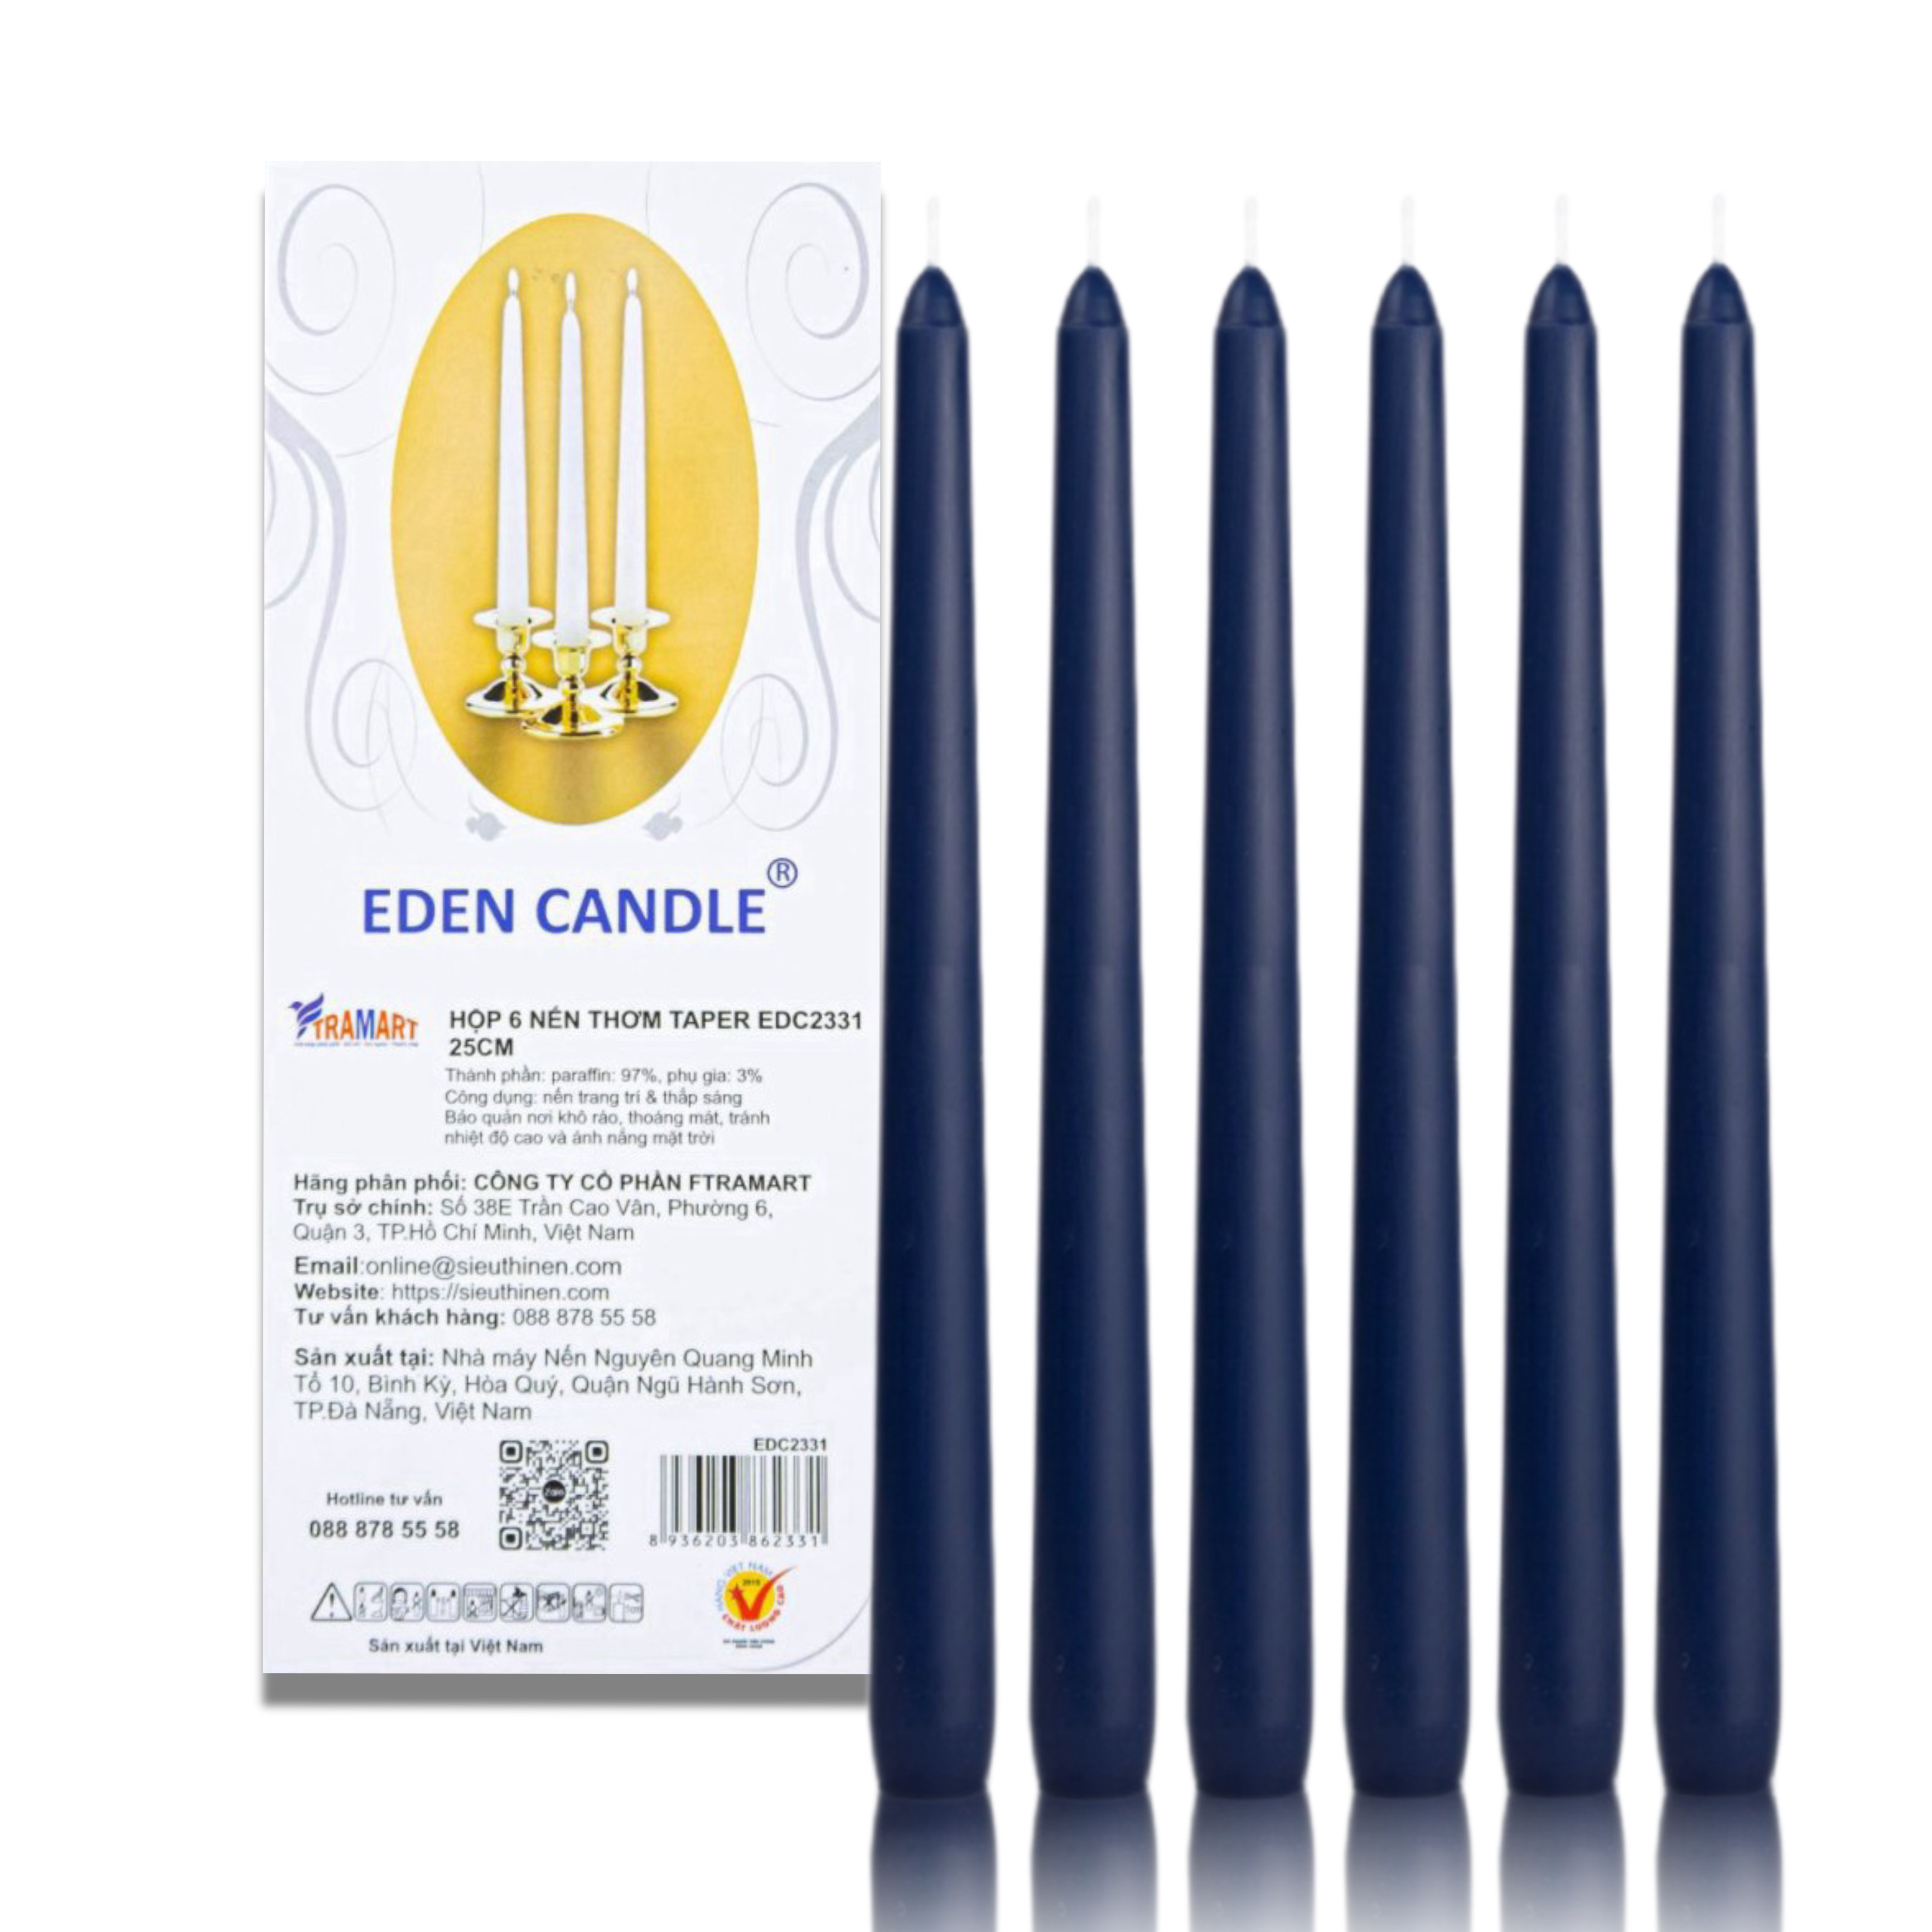 [Hộp 6 nến] Nến thơm taper Eden Candle FTRAMART EDC2331 (Xanh navy), cao 25 cm, phù hợp tất cả các chân nến theo tiêu chuẩn nến taper